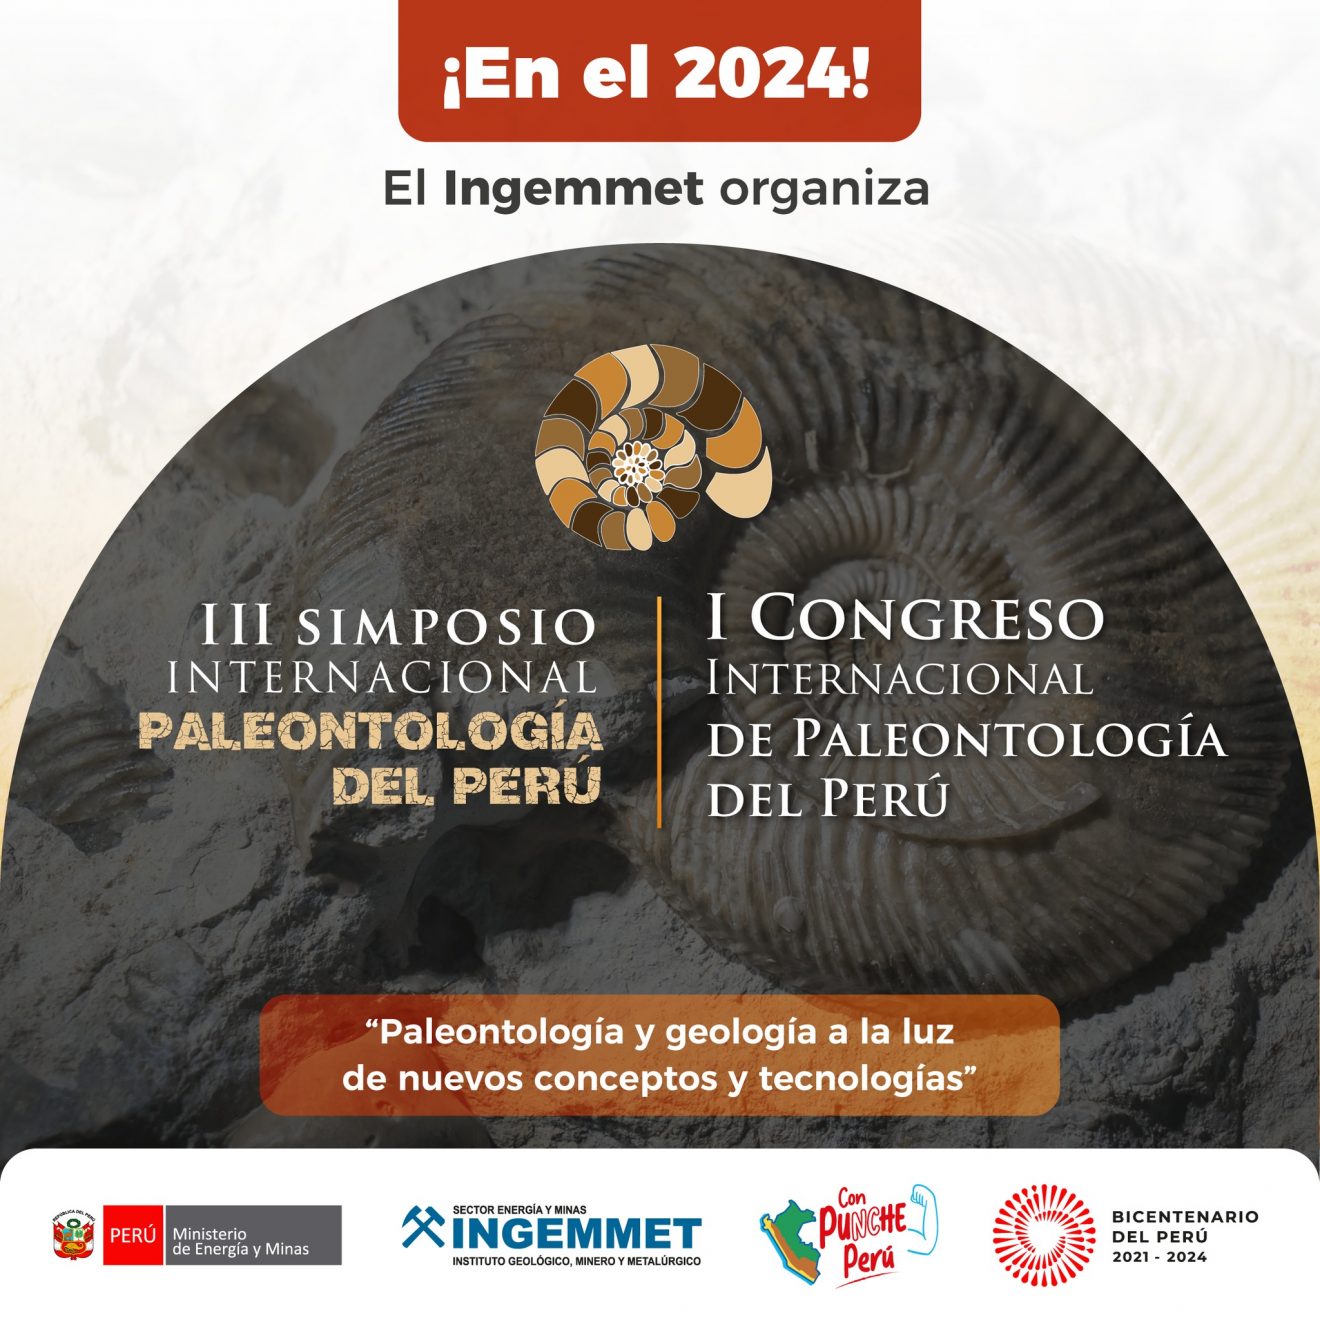 lll Simposio Internacional de Paleontología del Perú